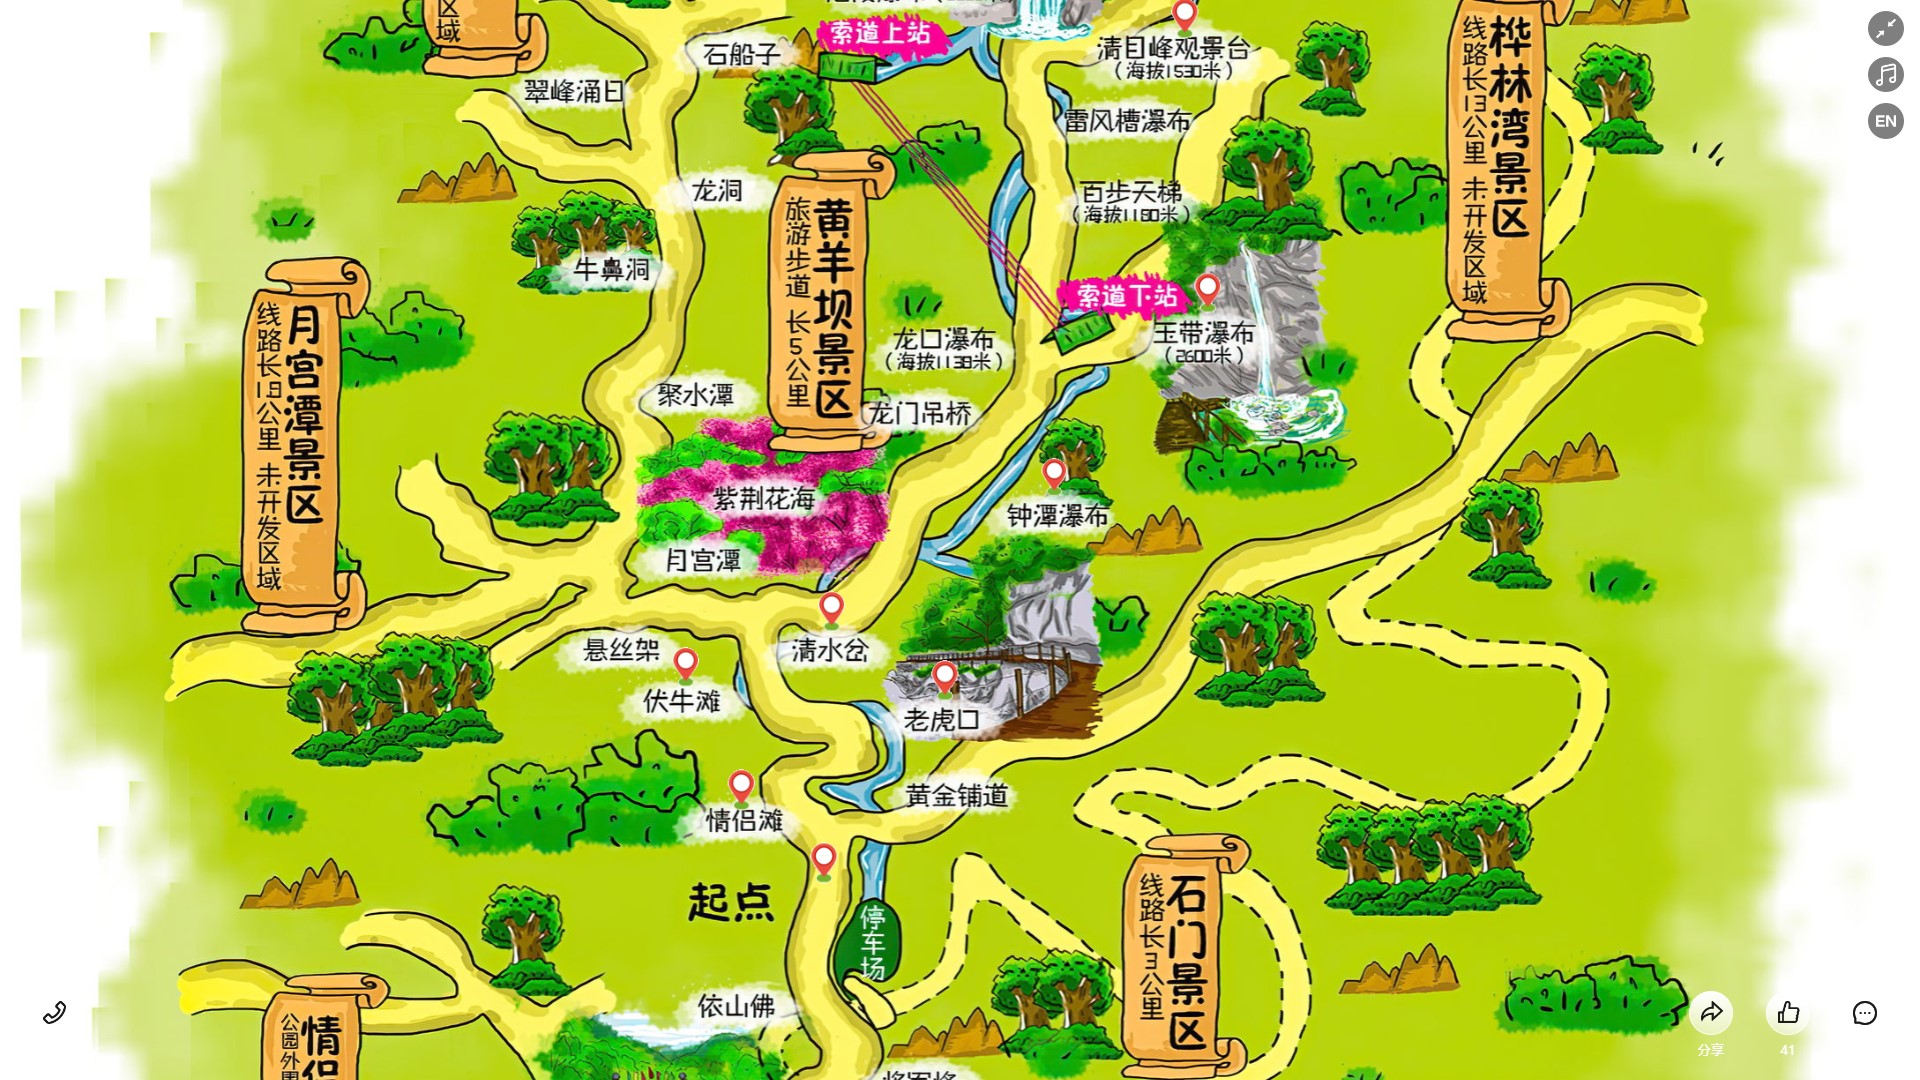 吉阳镇景区导览系统